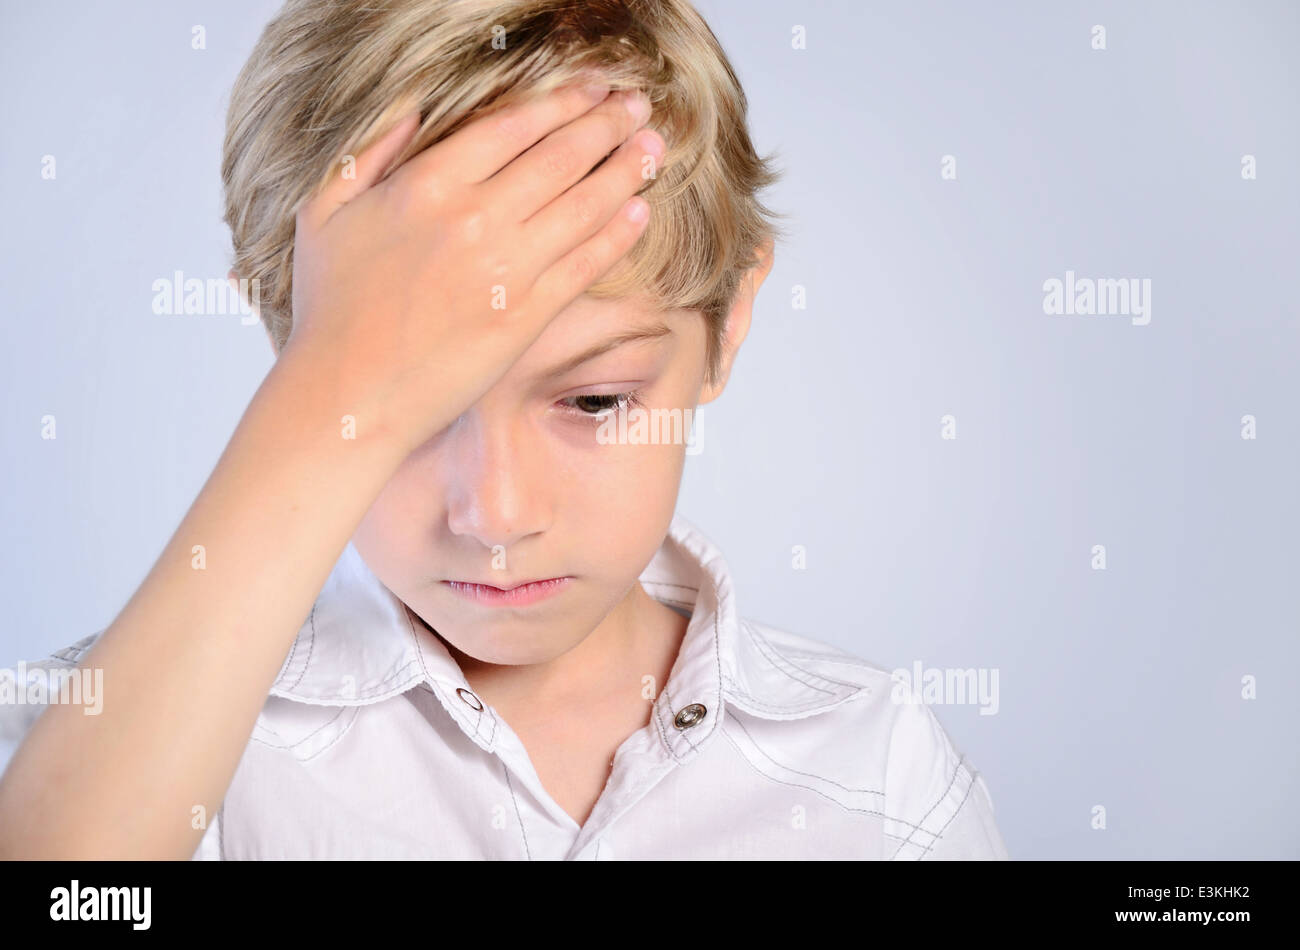 Schmerzen Kopfschmerzen junge Kind Hand Kopf Menschen Porträt Schmerzen krank Hintergrund Stress traurig schön grau grau enttäuscht Kindheit verletzt Stockfoto